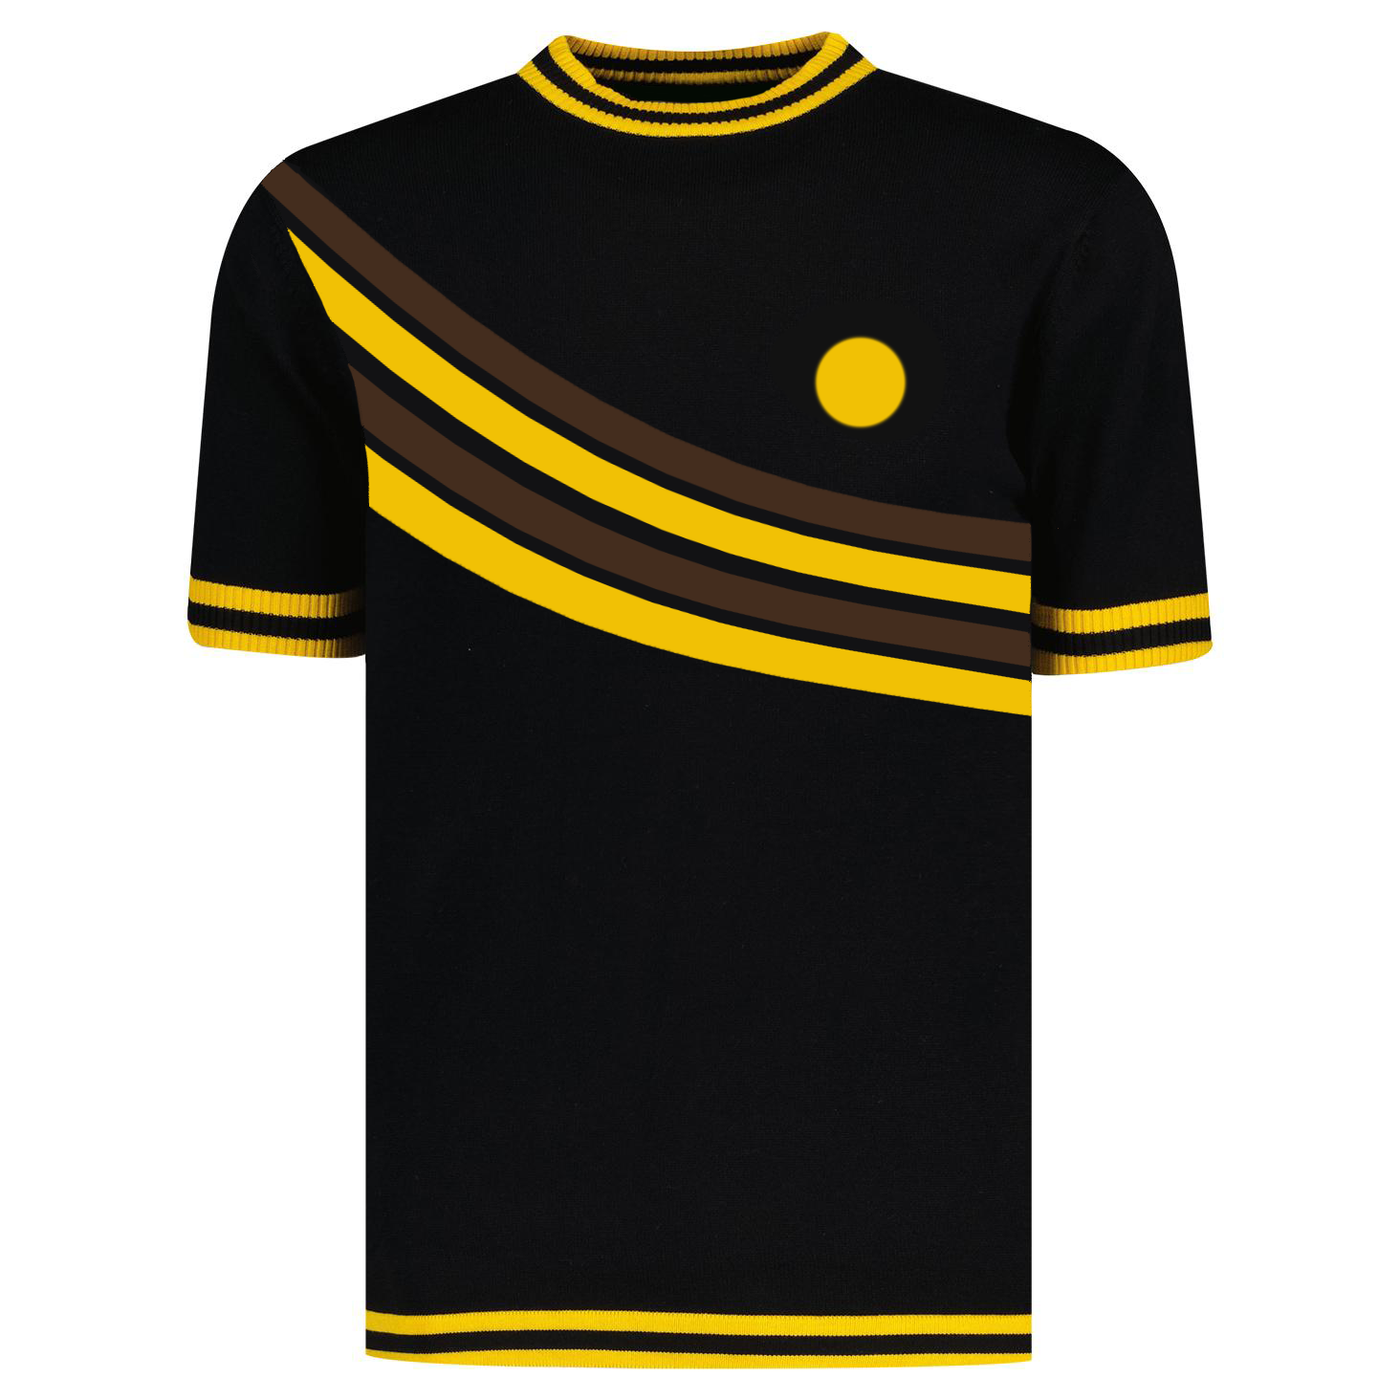 Men's yellow vintage striped knit T-shirt